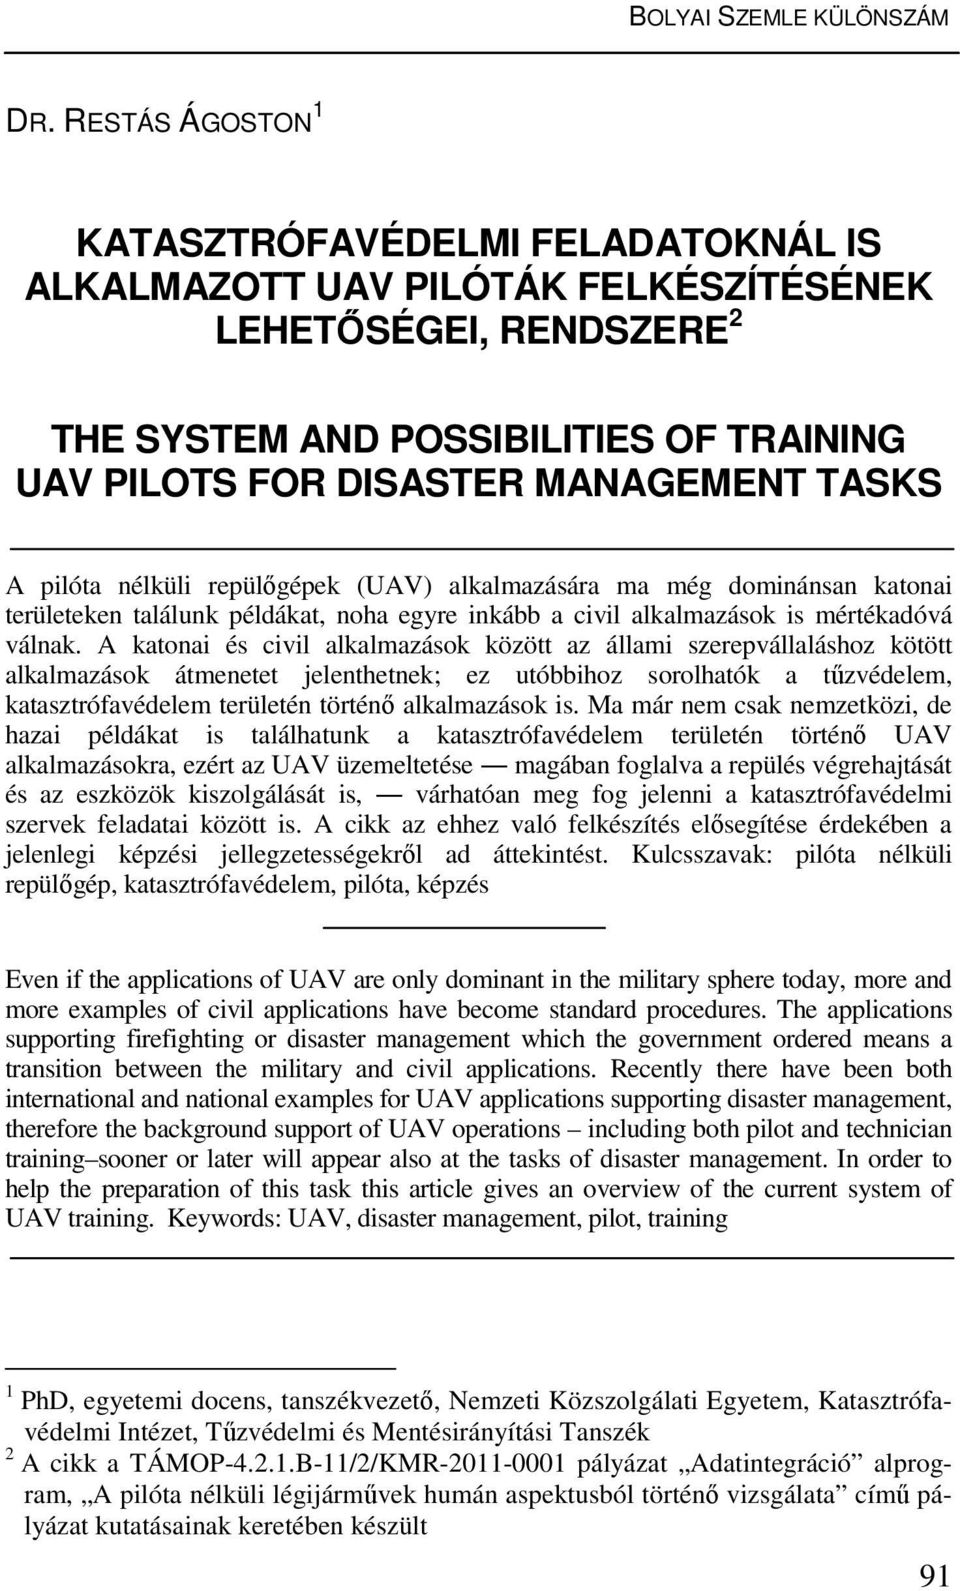 A pilóta nélküli repülőgépek (UAV) alkalmazására ma még dominánsan katonai területeken találunk példákat, noha egyre inkább a civil alkalmazások is mértékadóvá válnak.